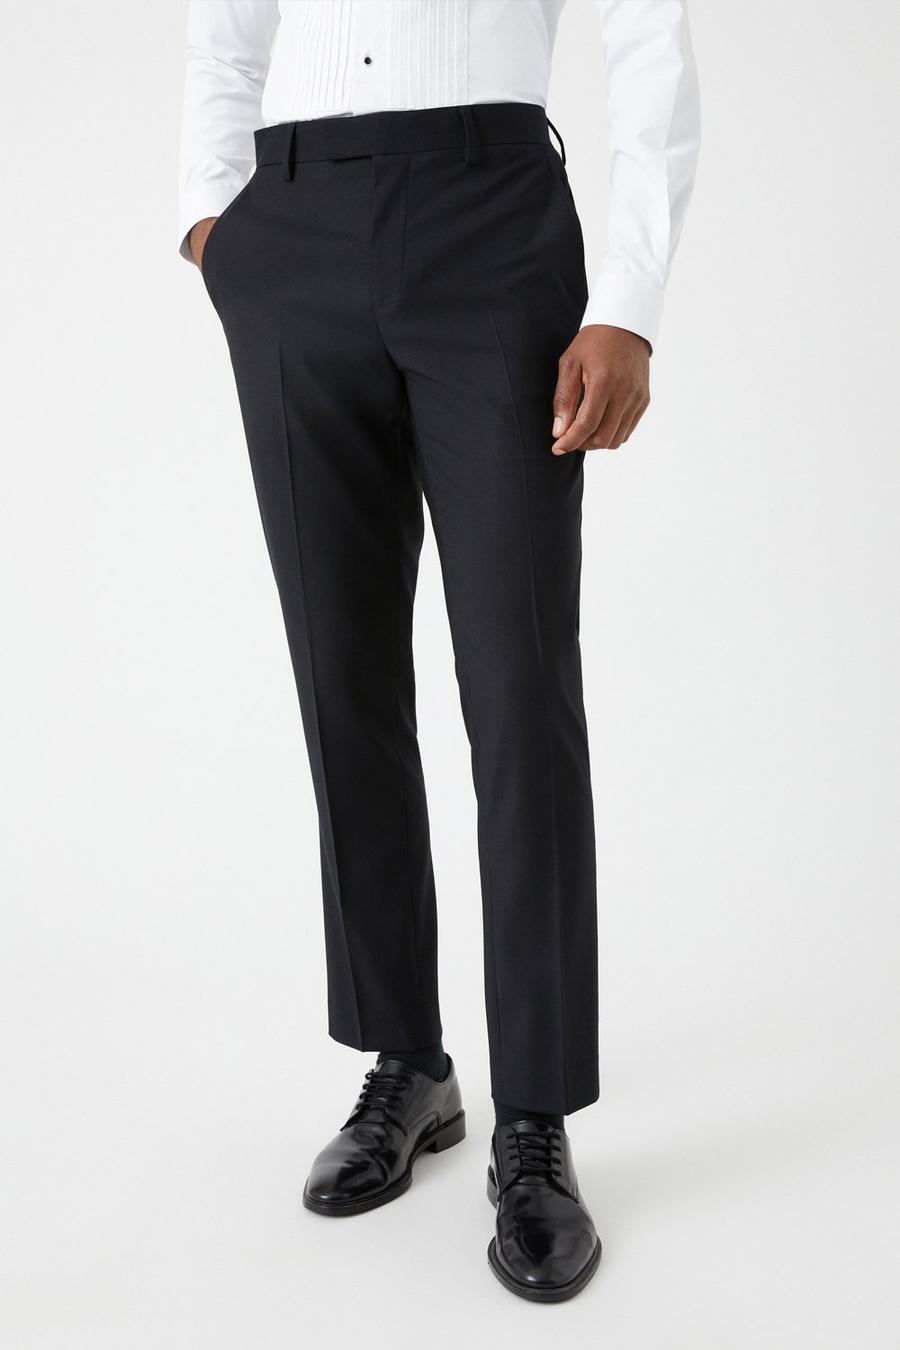 Slim Fit Black Tuxedo Two-Piece Suit